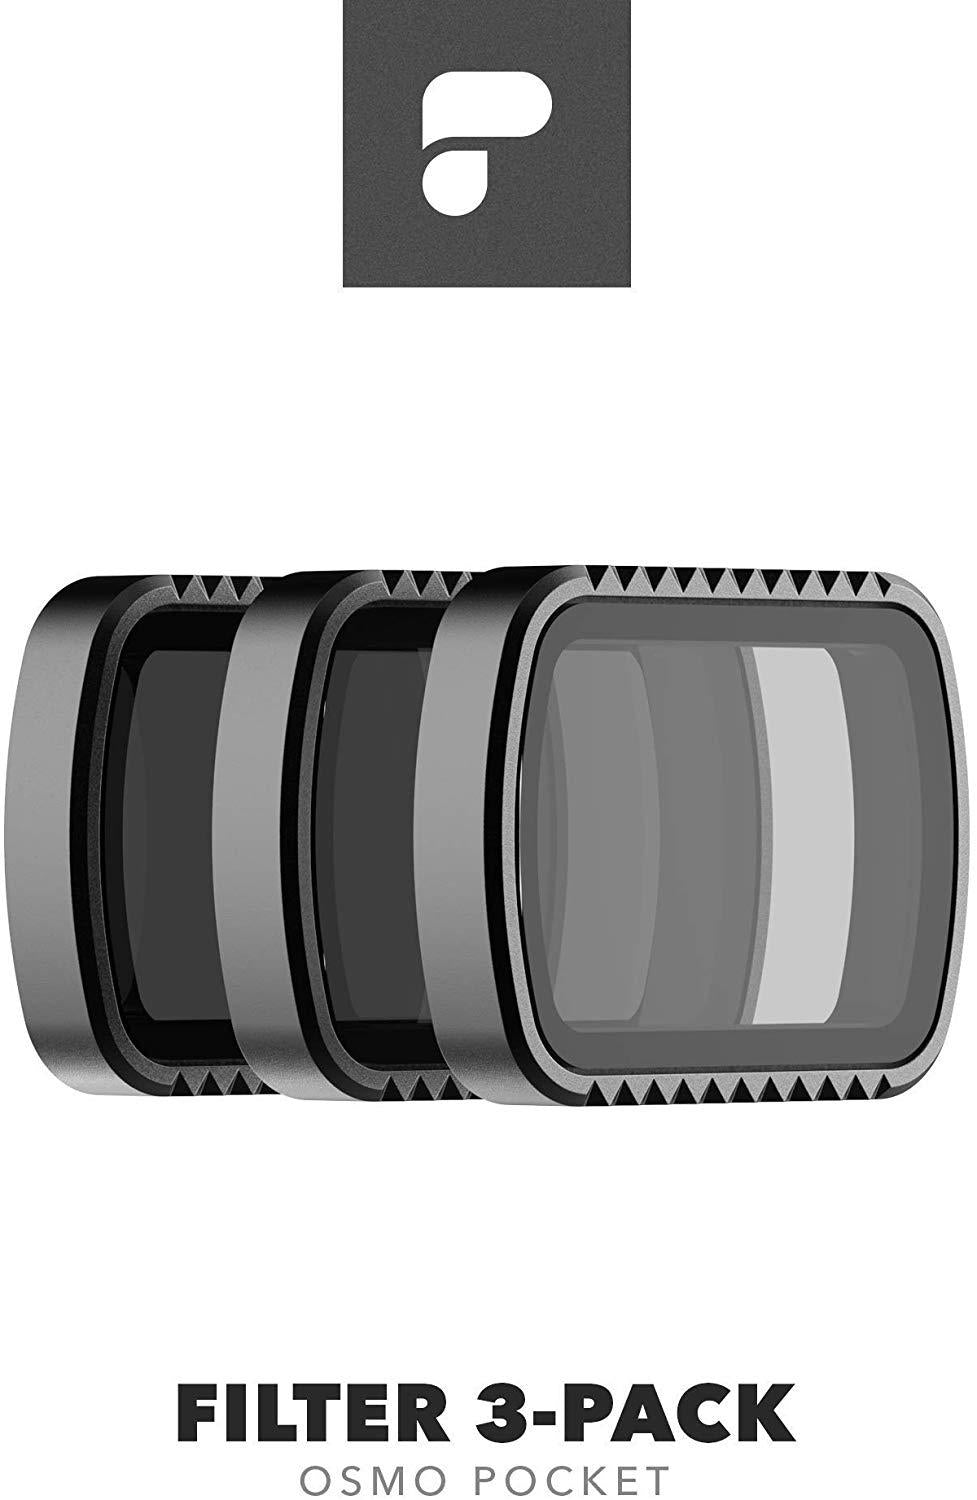 适用于 DJI Osmo Pocket 的 Polar Pro 标准系列 3 件套滤镜套件，包括 ND8、ND16 和 ND32 滤镜